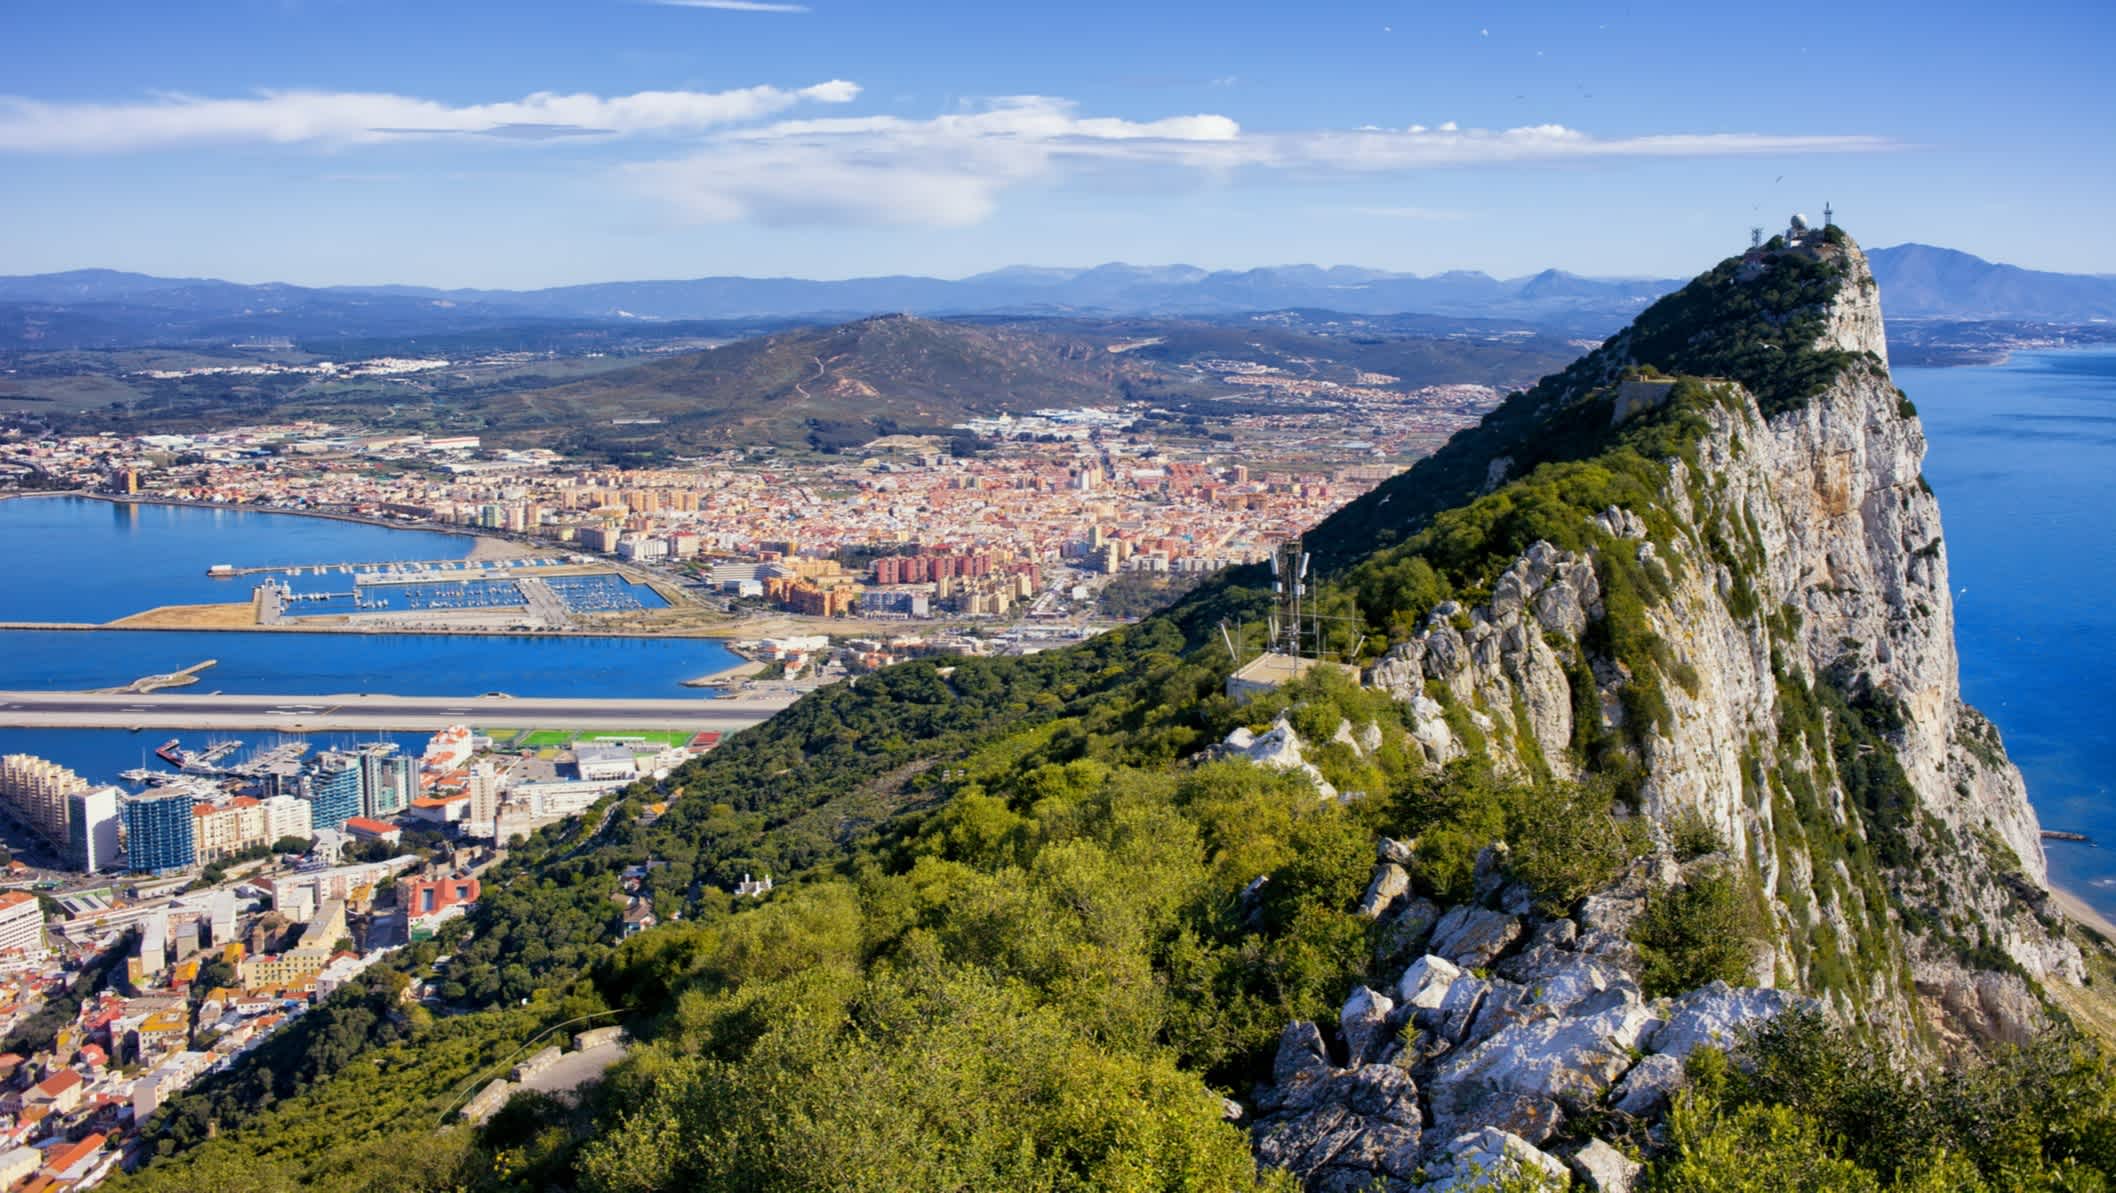 Felsen (Upper Rock) von Gibraltar im südlichen Teil der Iberischen Halbinsel, Spanien

